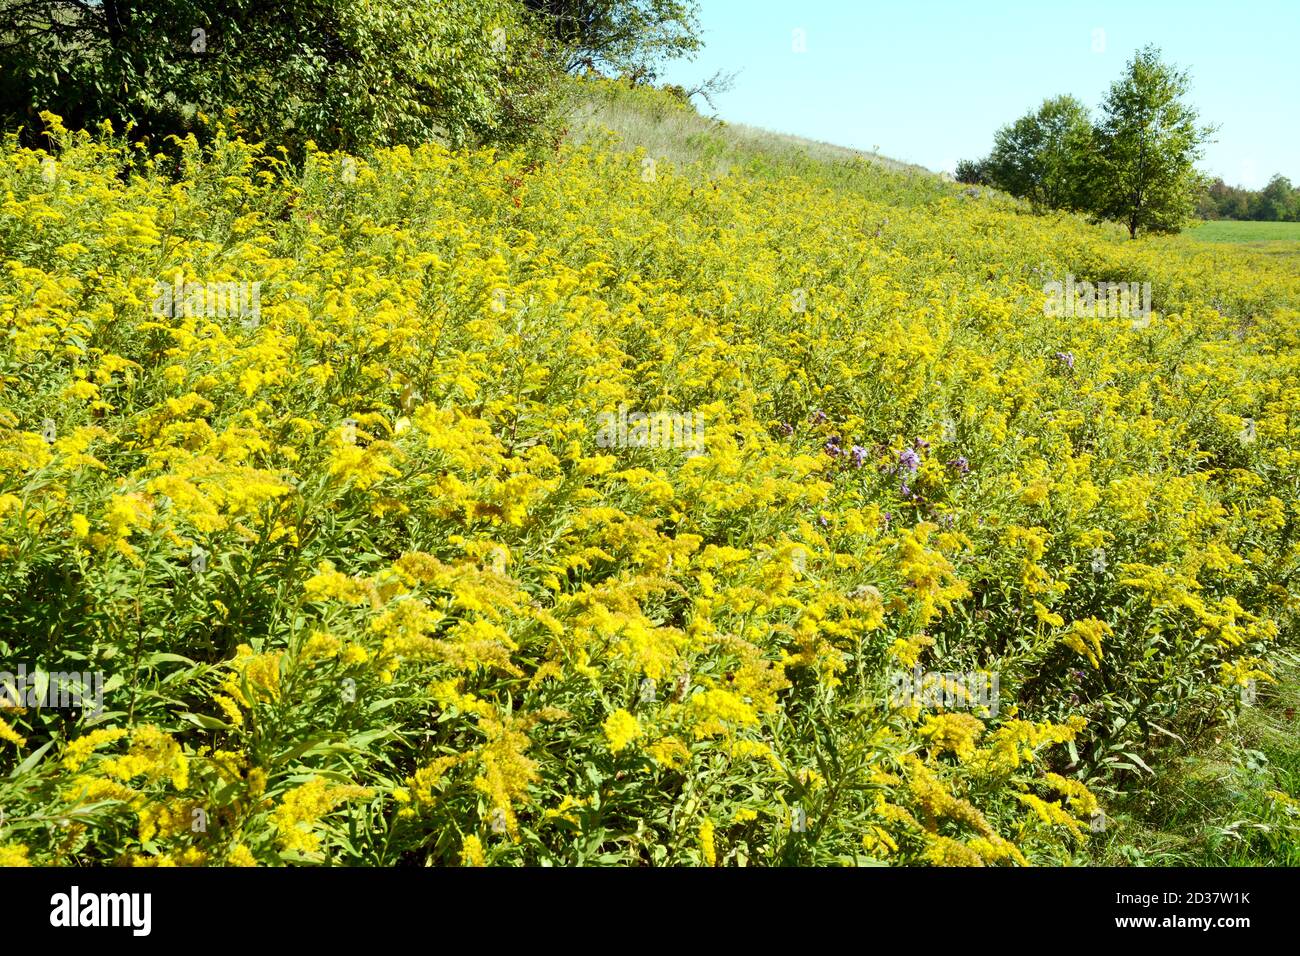 Champ de fleurs sauvages de la verge d'or (solidago) sur le sentier Bruce, dans le parc provincial Boyne Valley, Ontario, Canada. Banque D'Images